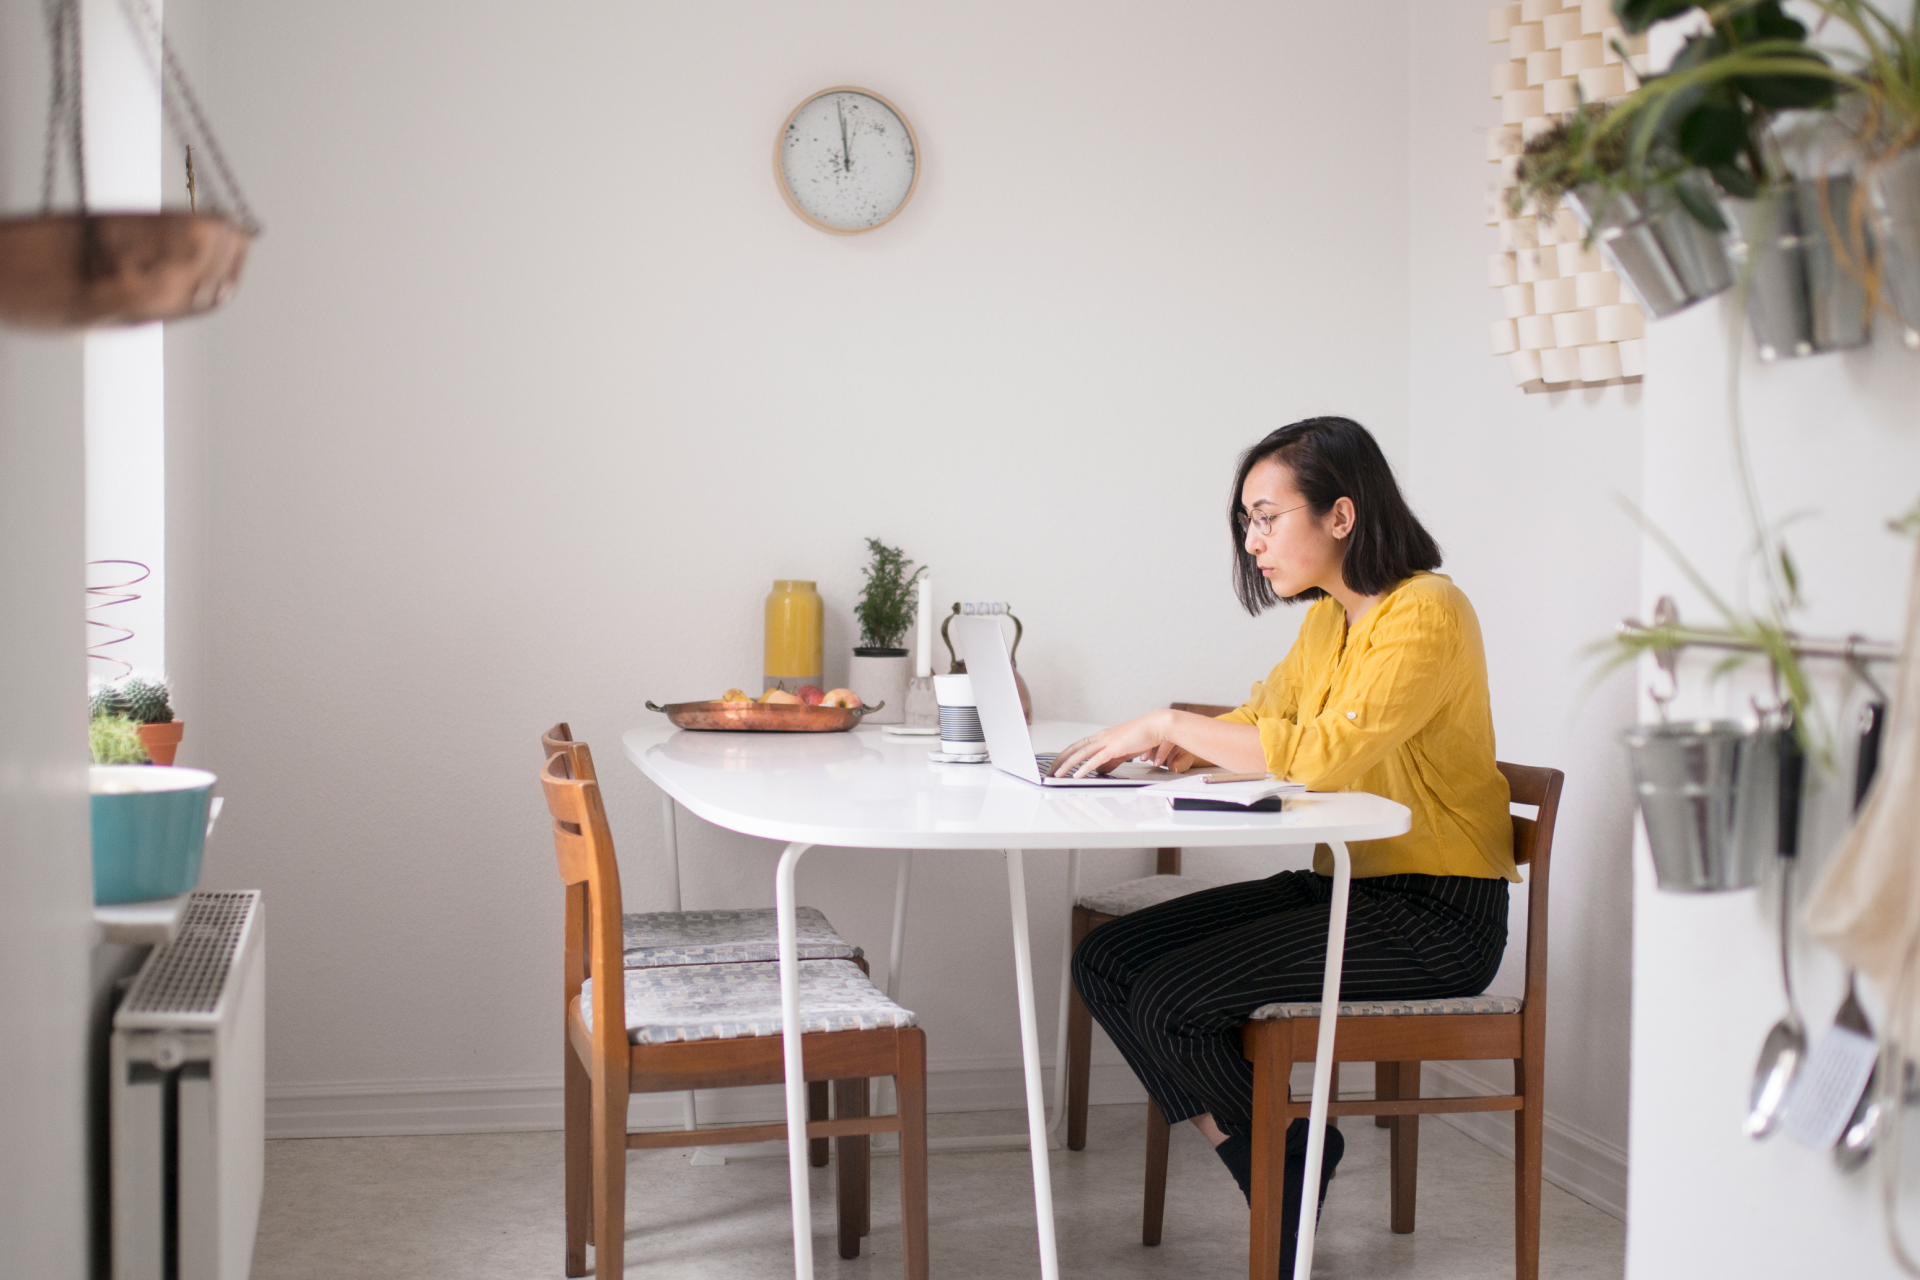 Uma pessoa trabalhando em uma nova versão de um arquivo de seu espaço de trabalho doméstico